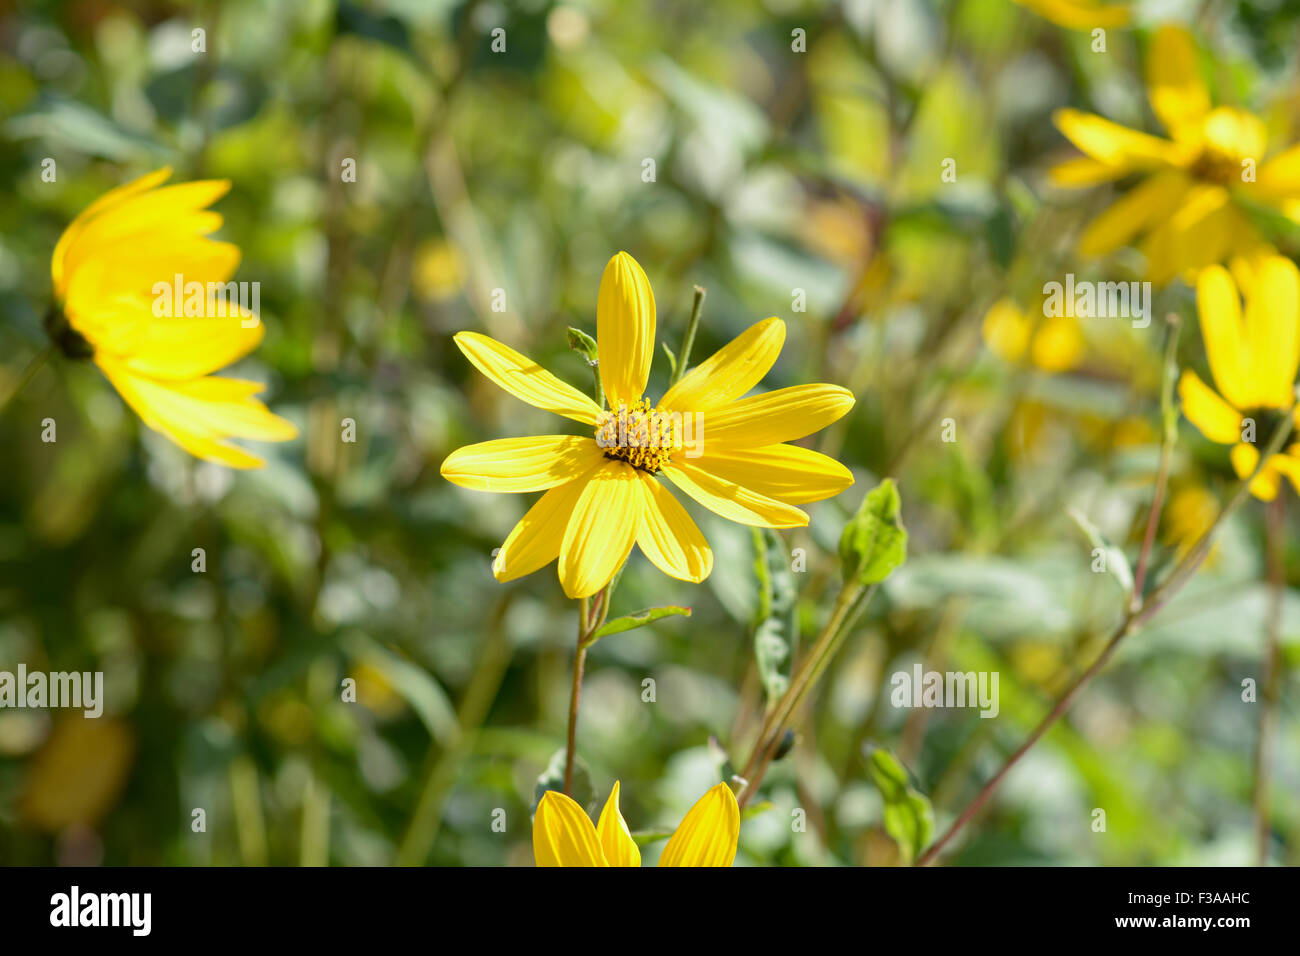 Aster d'or (heterotheca subaxillaris) Flowers in garden Banque D'Images